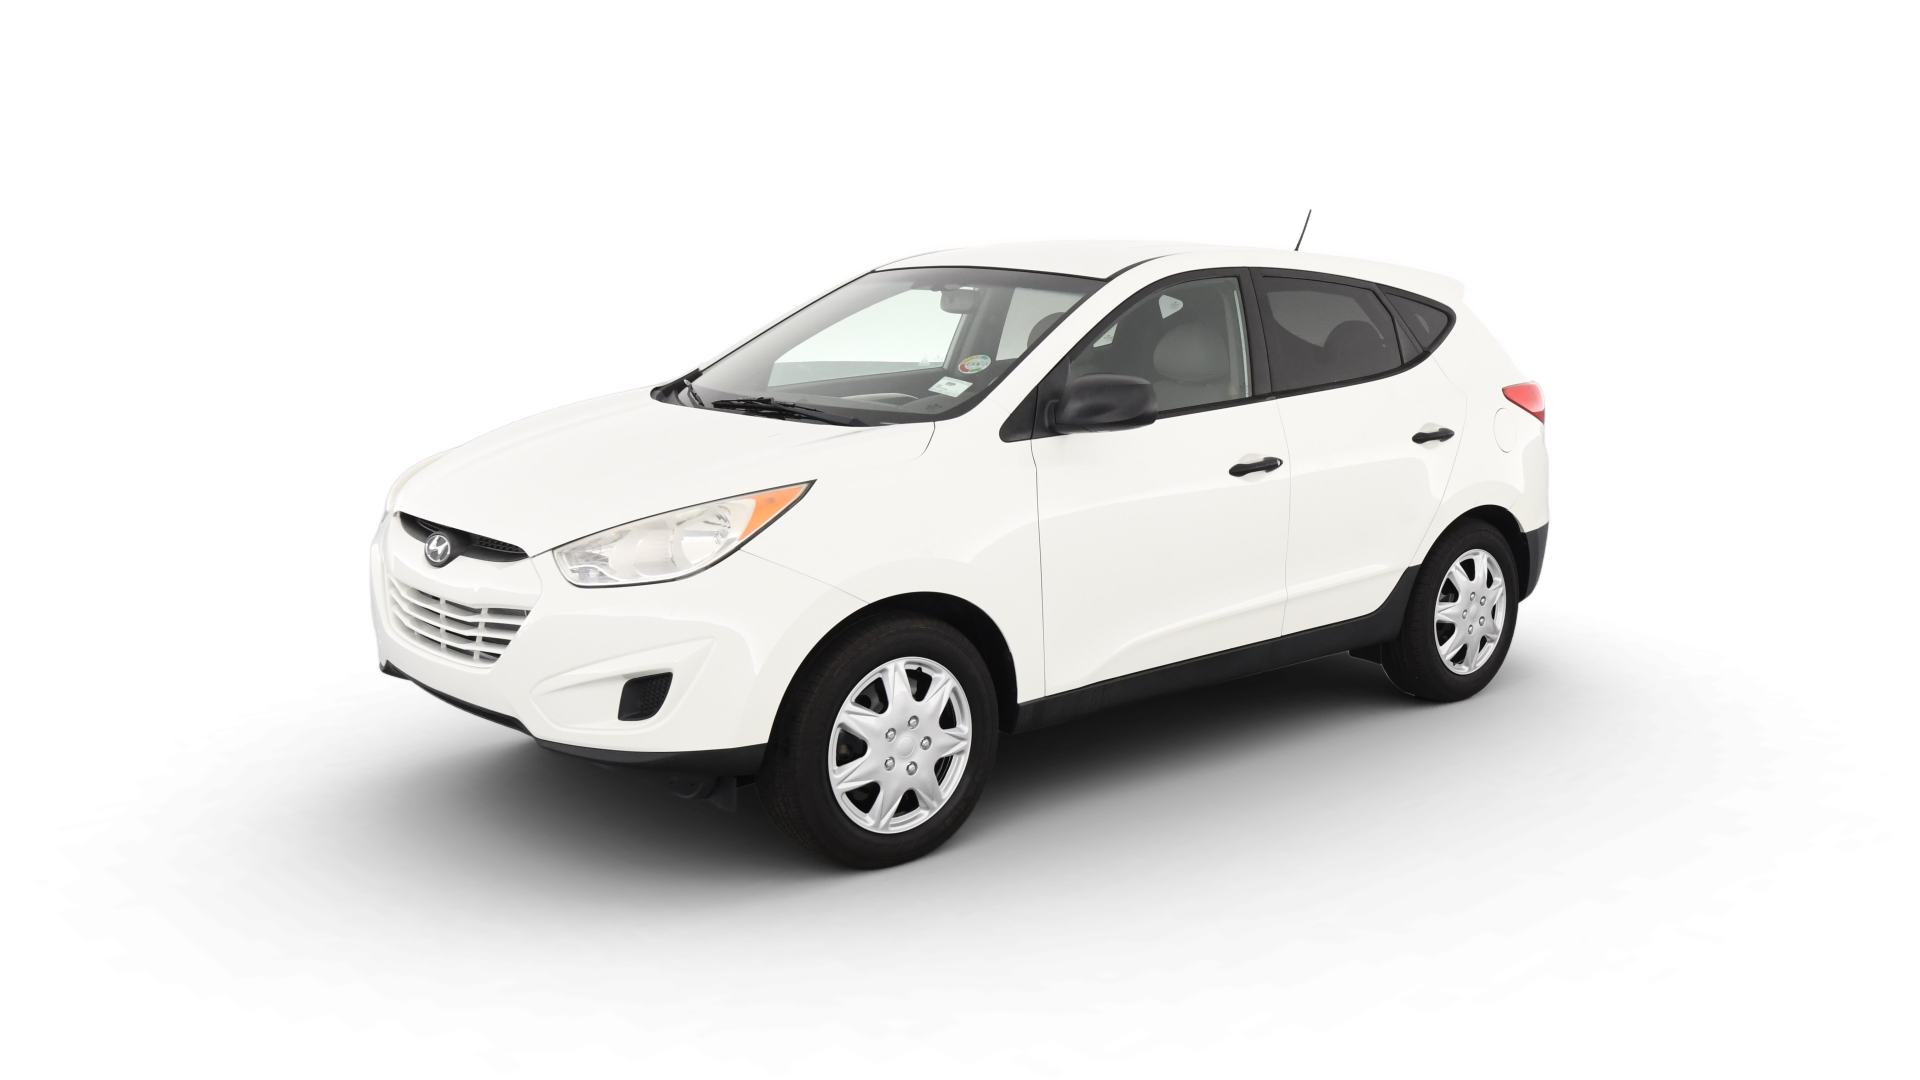 Hyundai Tucson model image.